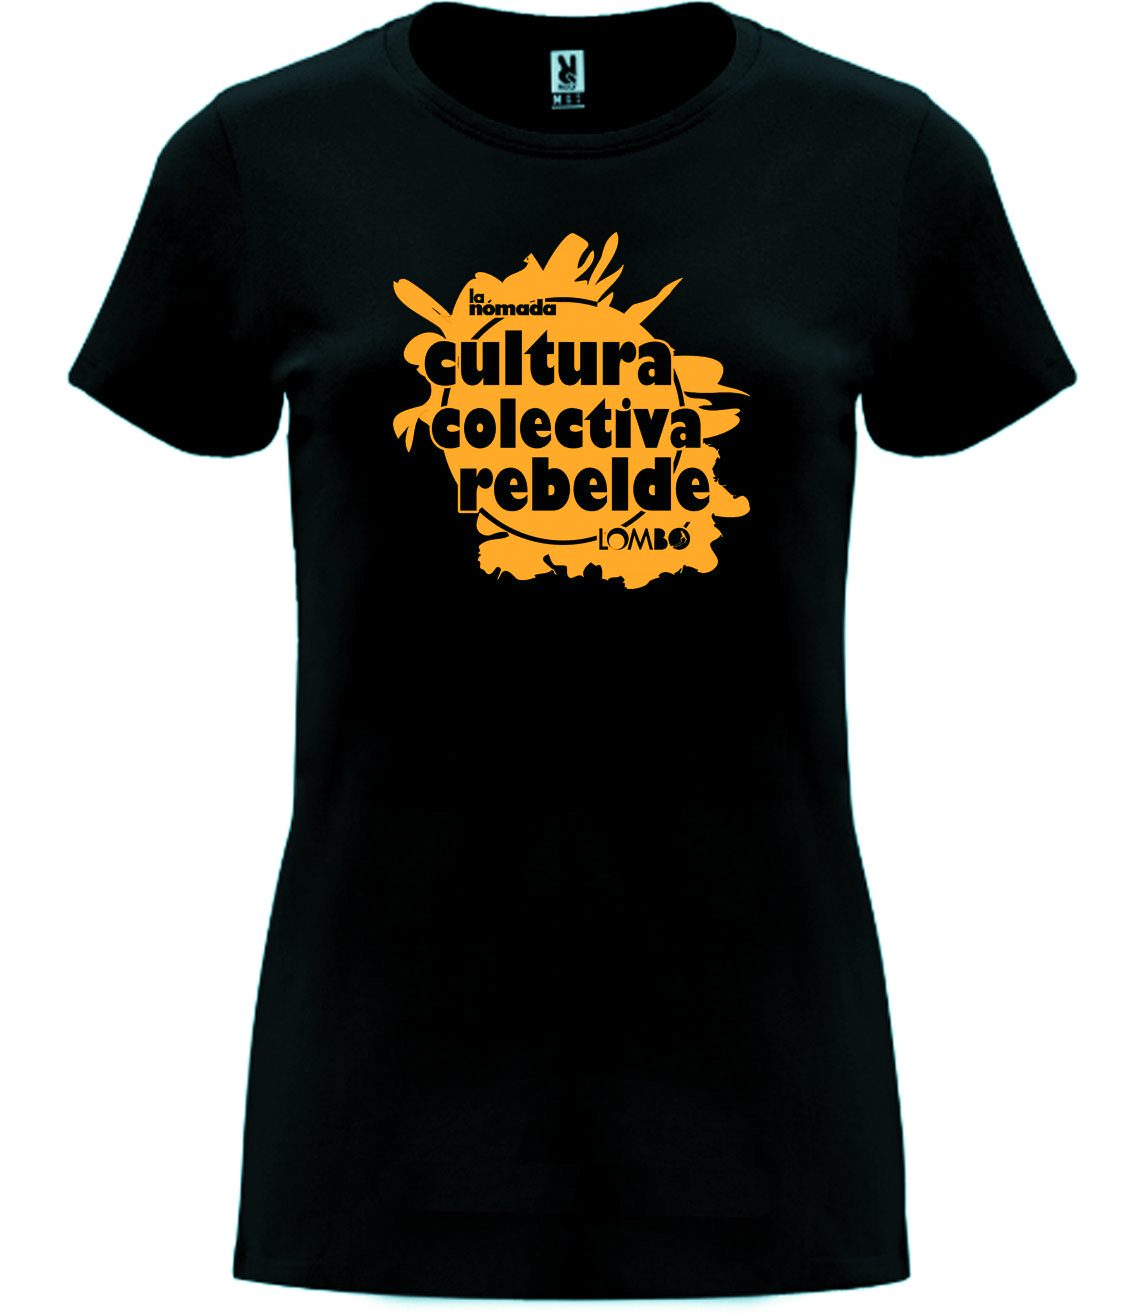 Camisetas y bolsas de Cultura colectiva rebelde